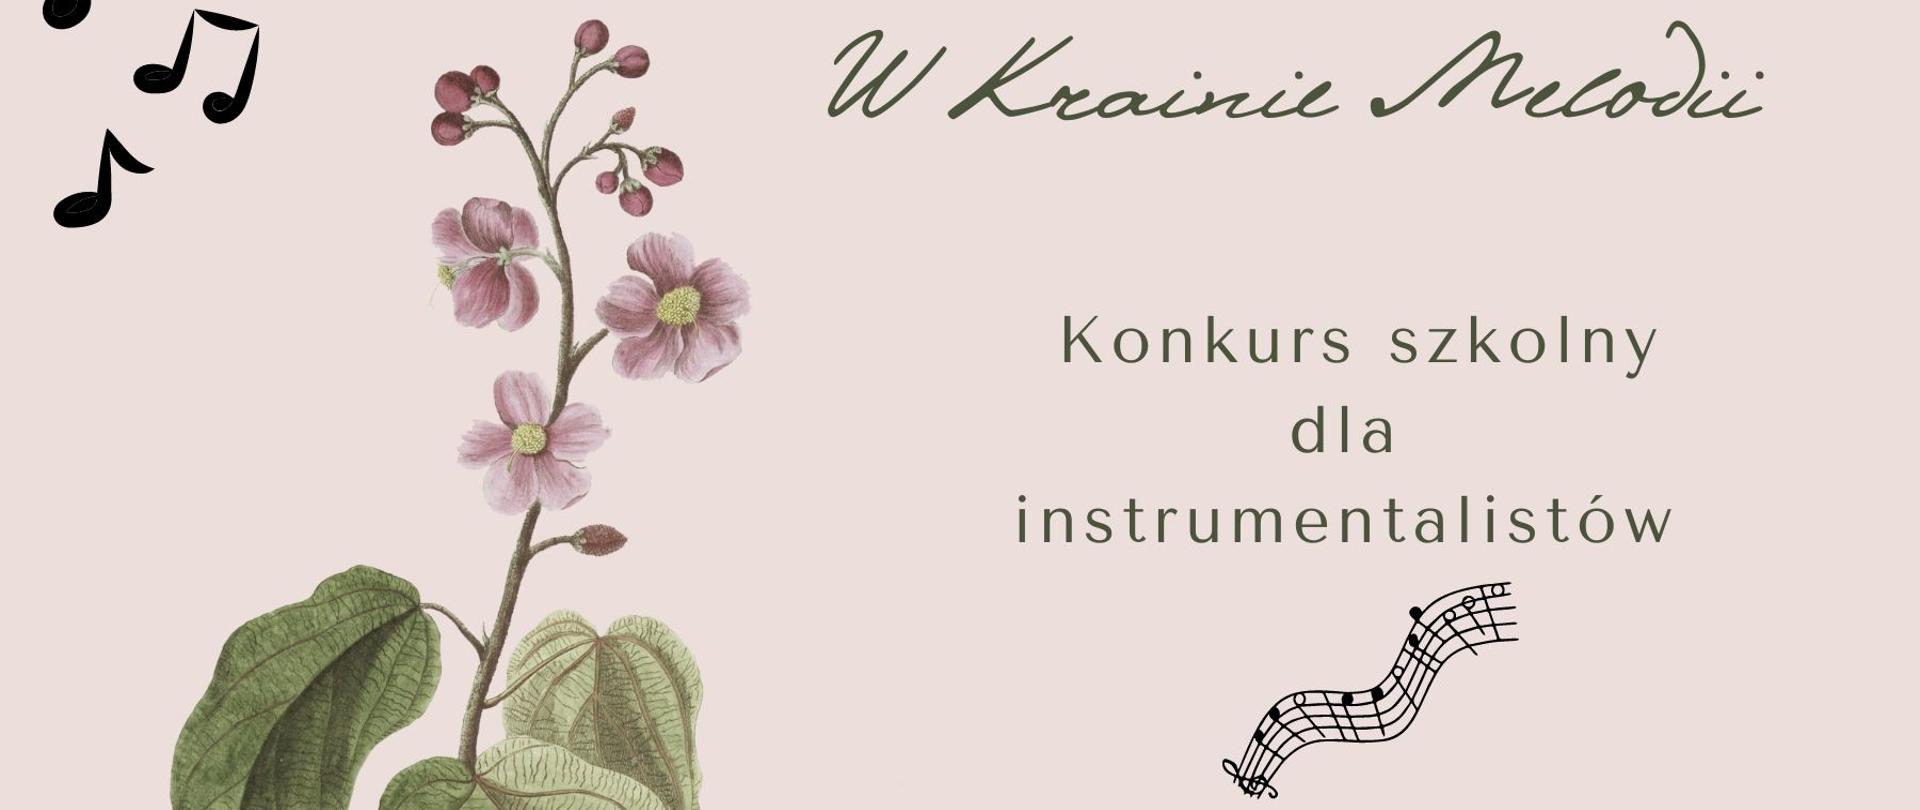  W Krainie Melodii, poniżej napis konkurs szkolny dla instrumentalistów, 5 kwietnia 2023r., środa. 